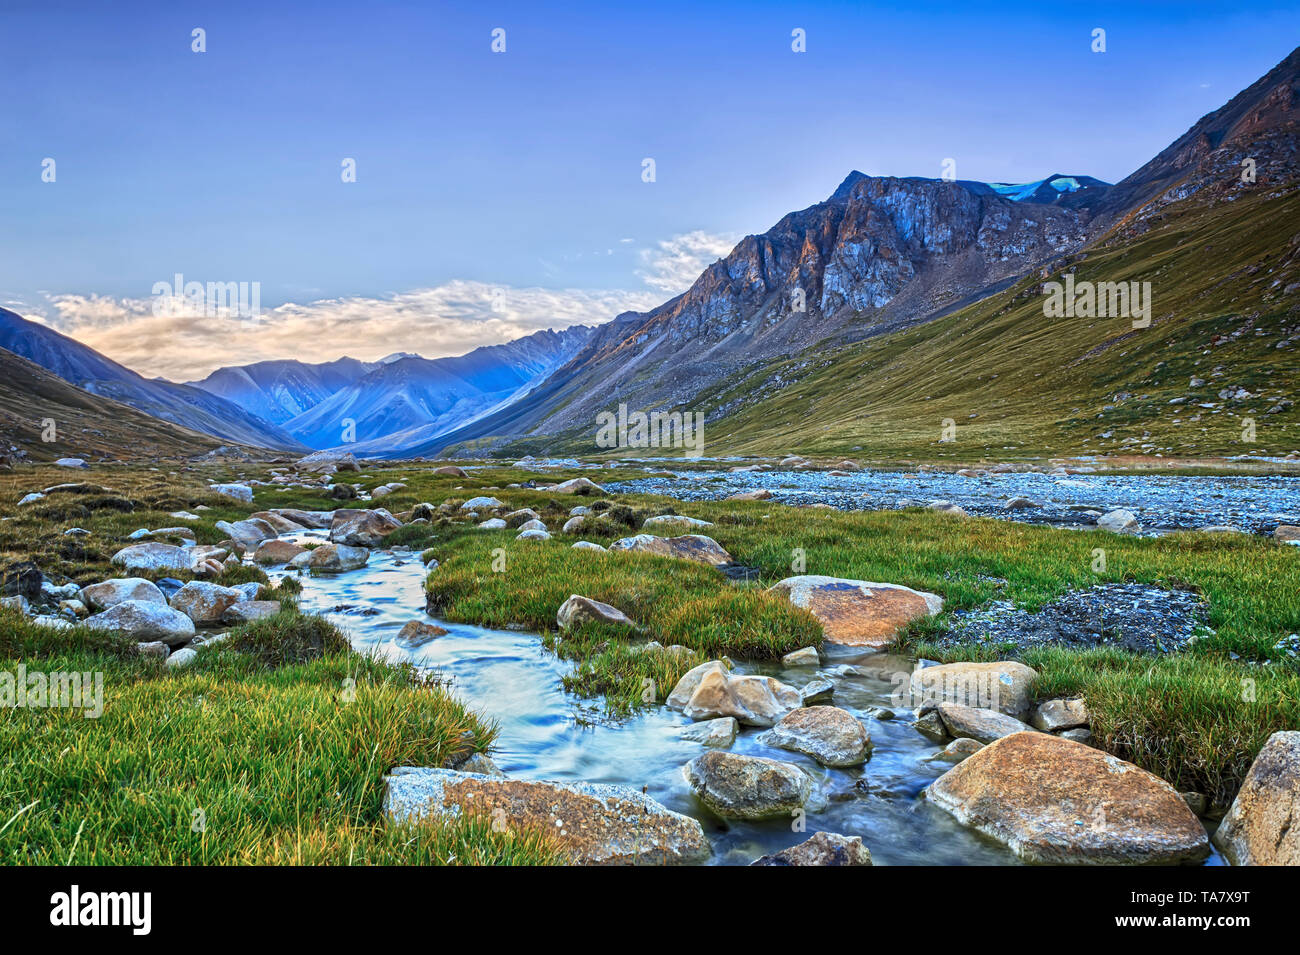 Paisajes de montaña de Kirguistán. Burkan River Valley. Foto de stock